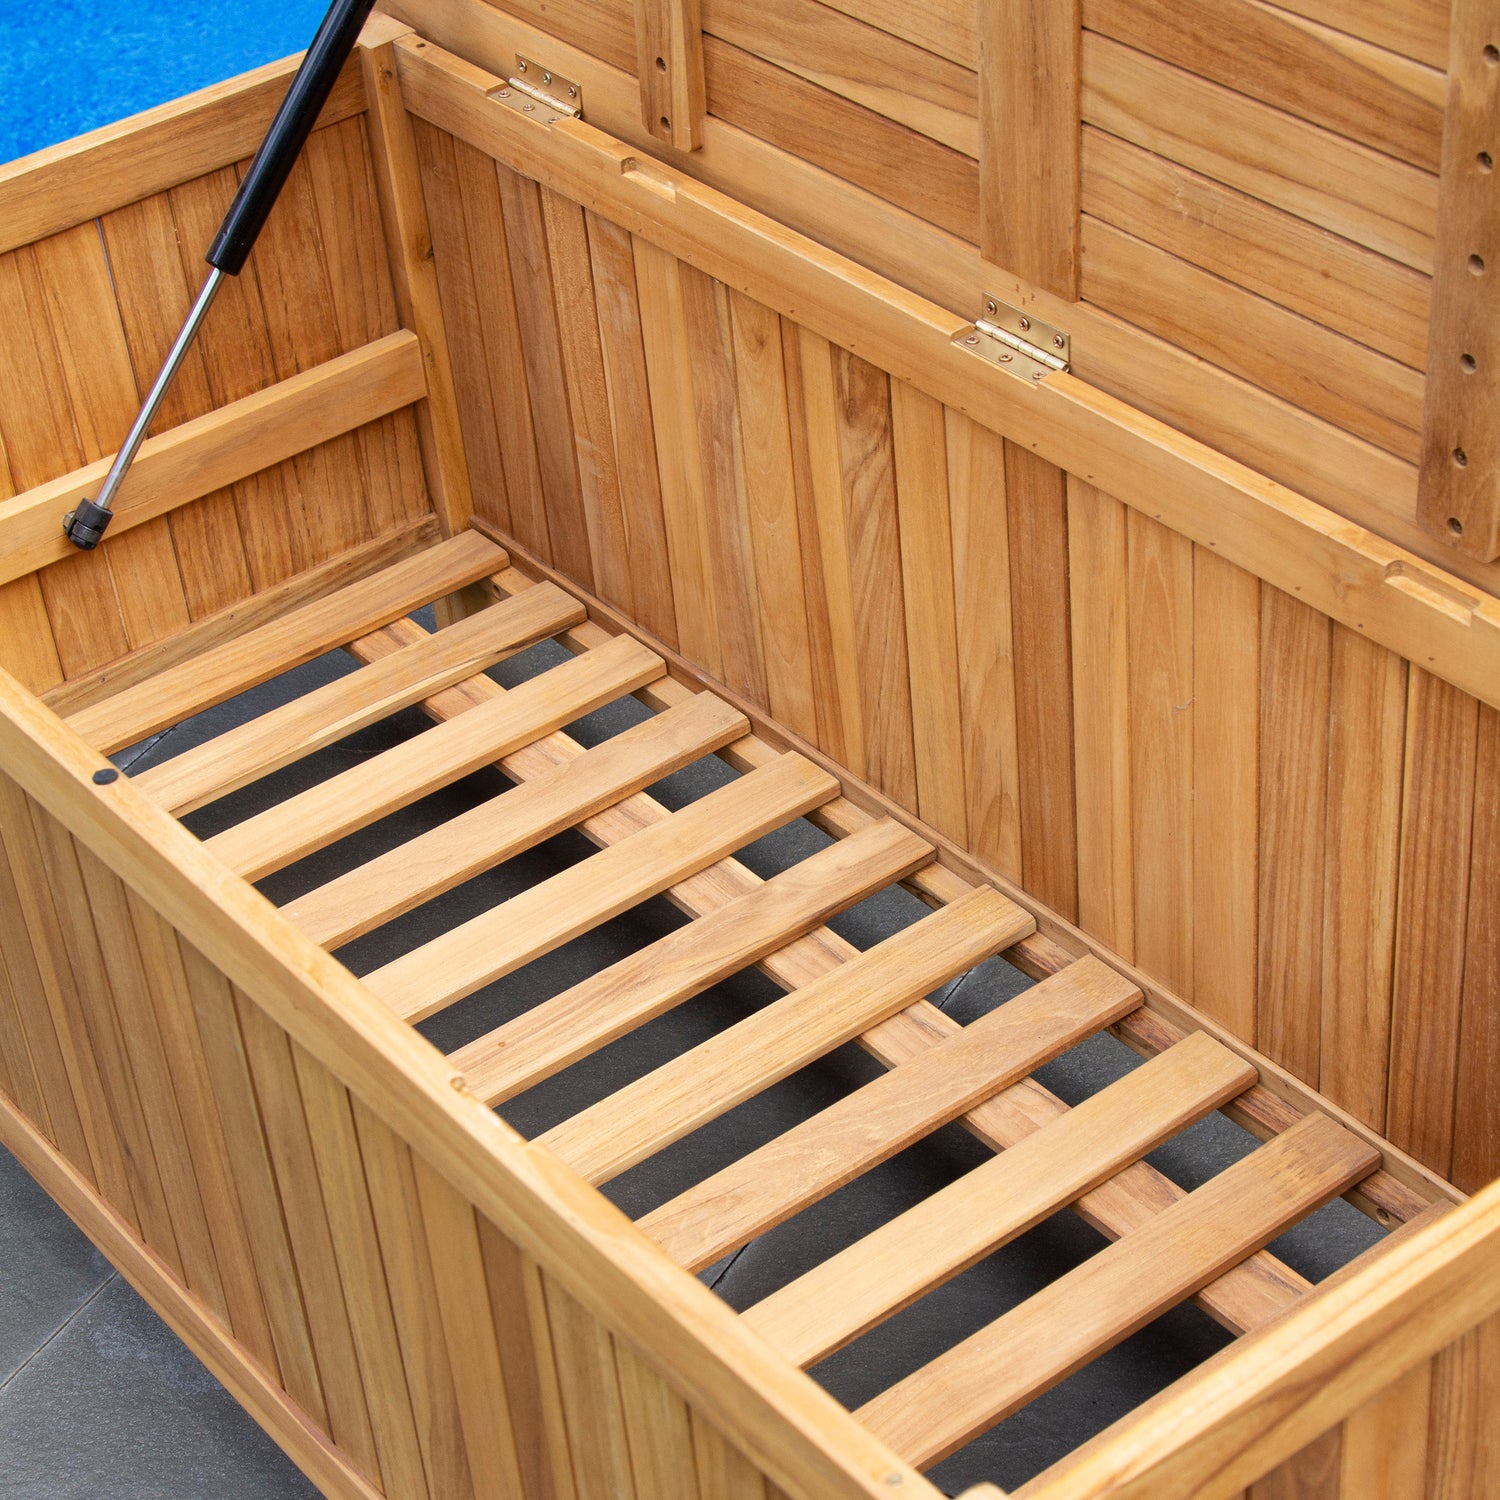 Richmond Teak Wood 60 Inch Outdoor Storage Deck Box